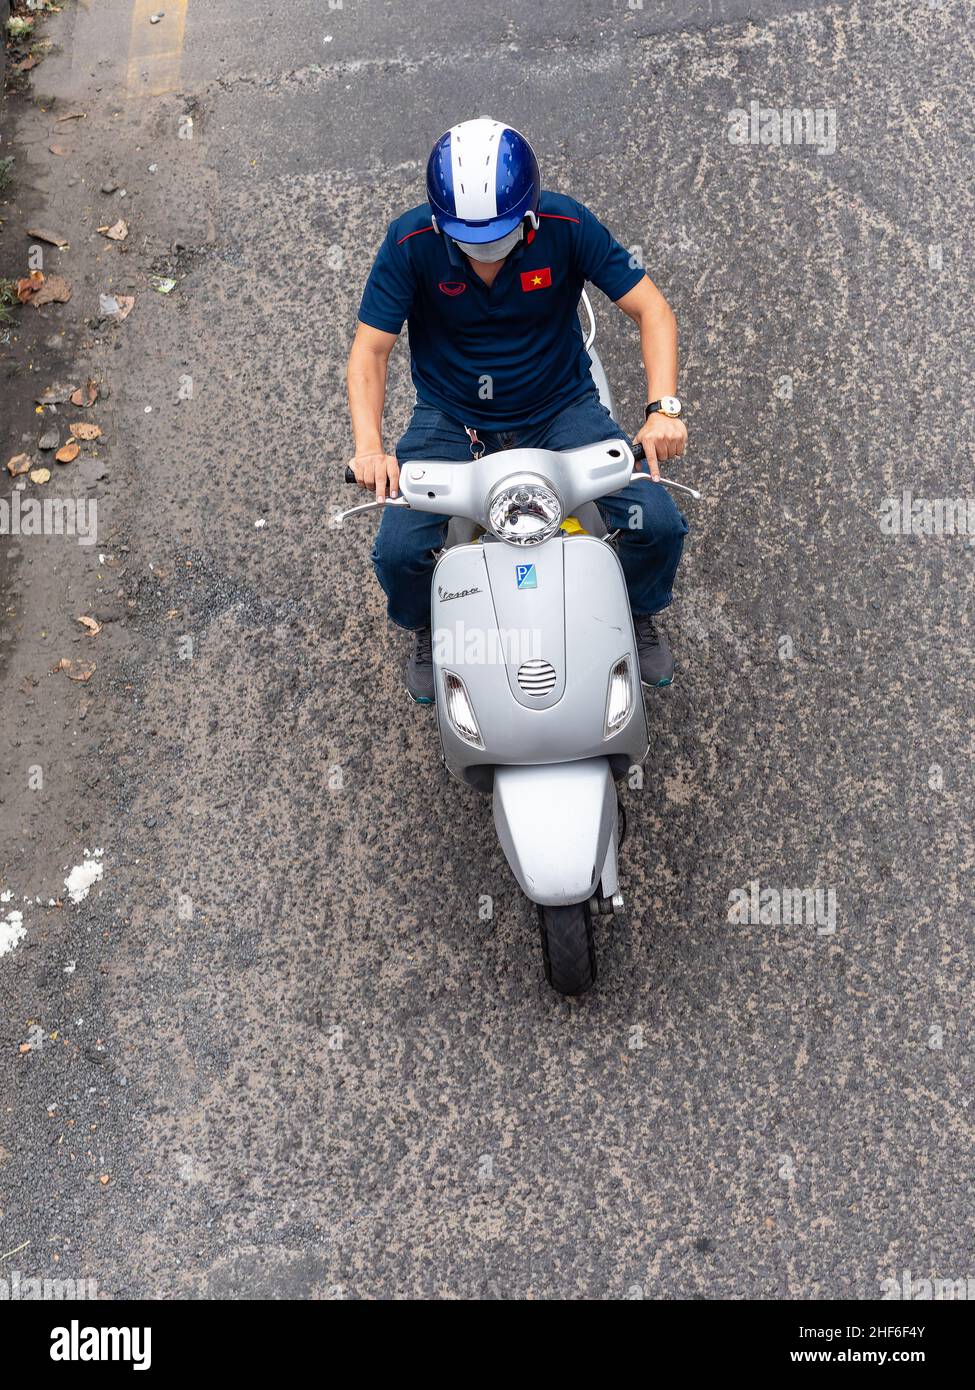 Les scooters Vespa sont populaires au Vietnam, et la société italienne a une usine dans le pays pour fabriquer des scooters pour le marché local et d'autres cou Banque D'Images